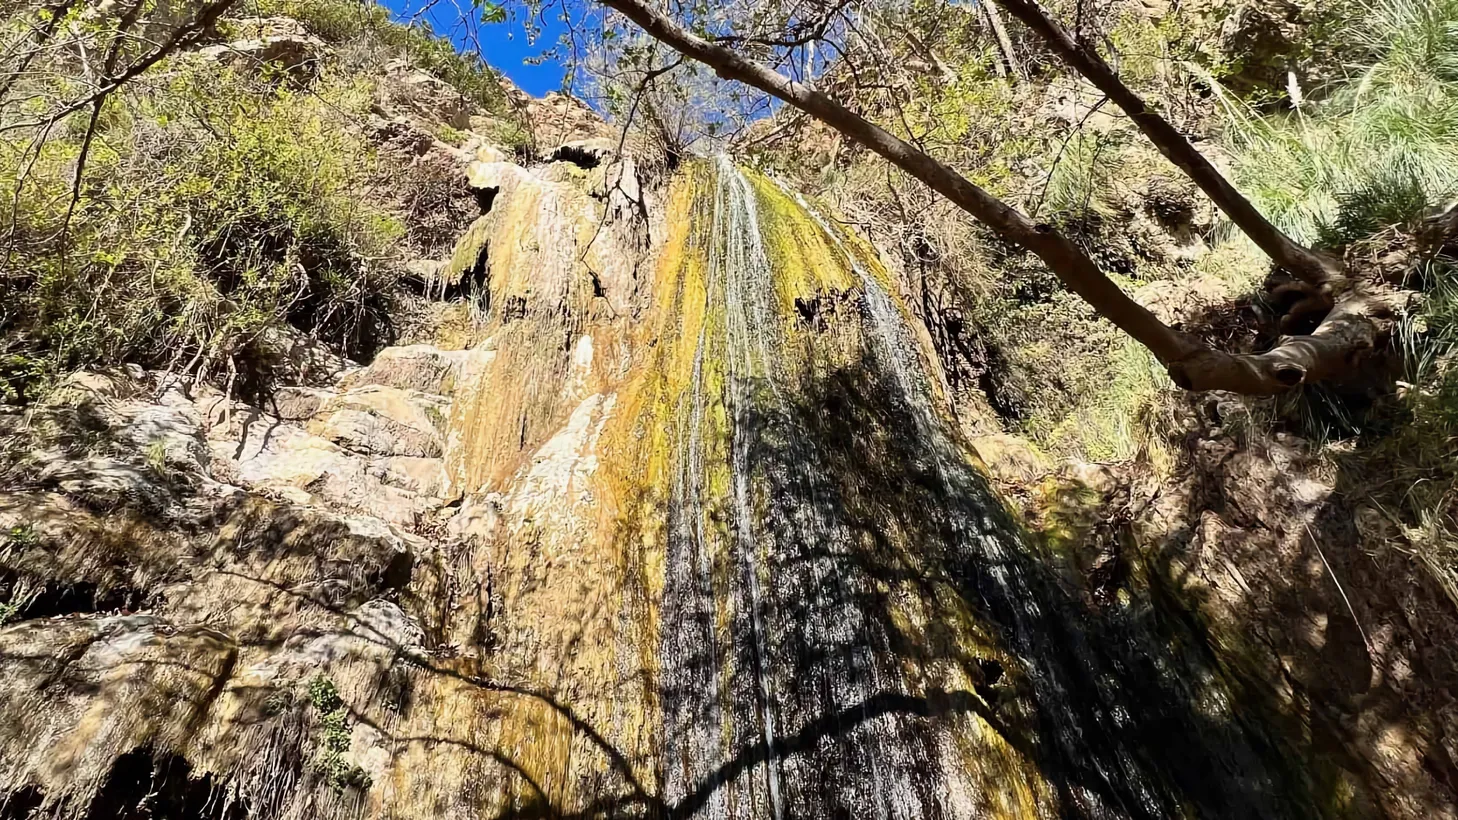 Escondido Falls is at Escondido Canyon Park.